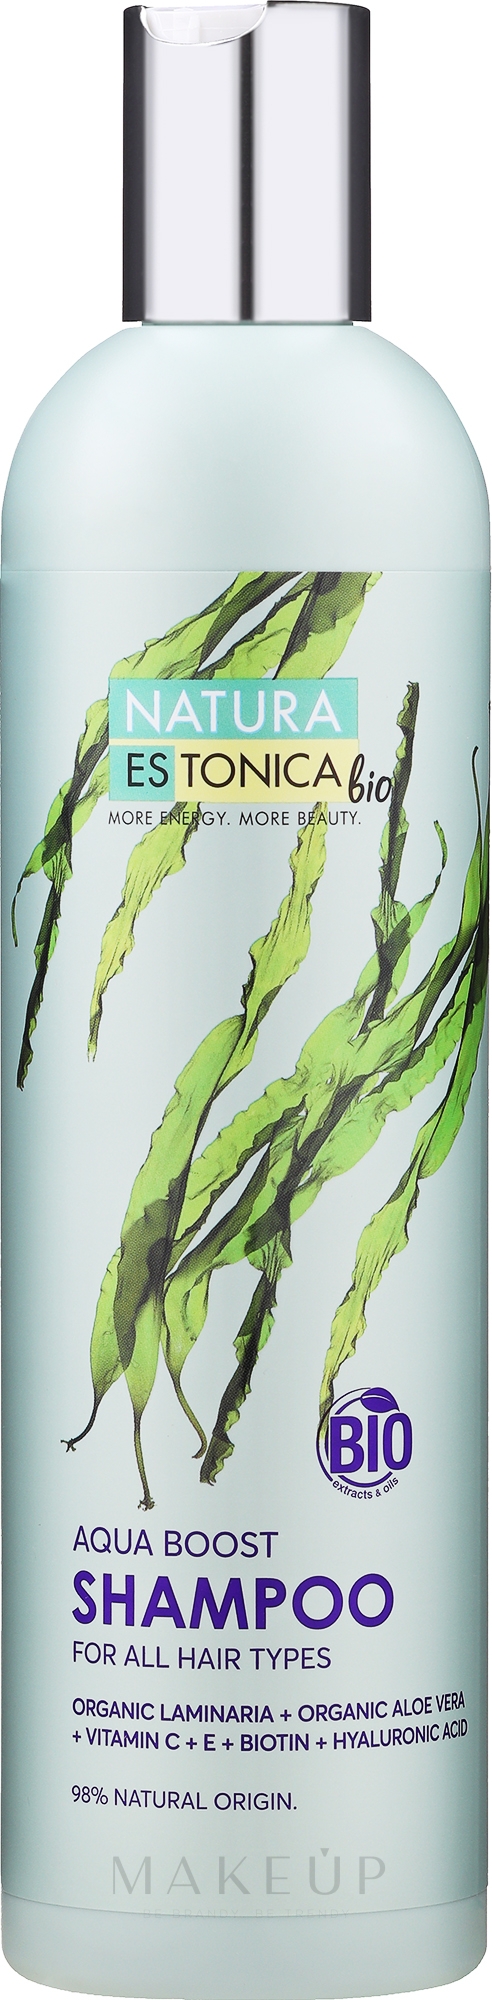 Feuchtigkeitsspendendes Shampoo für feines, coloriertes Haar - Natura Estonica Aqua Boos Shampoo — Foto 400 ml